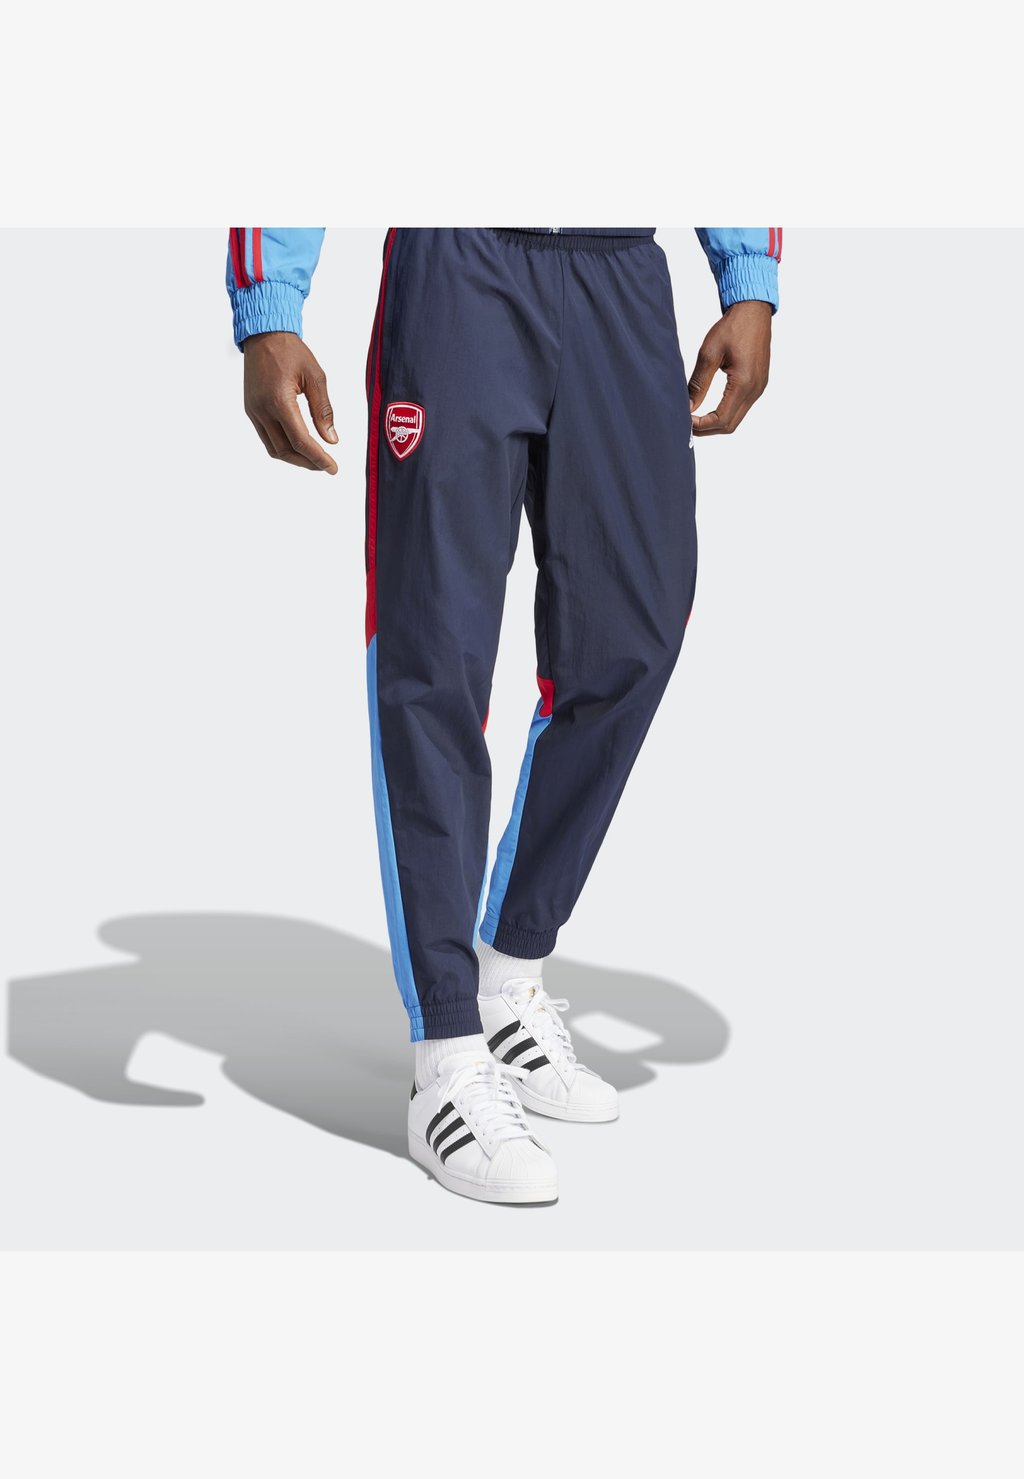 Спортивные брюки ARSENAL LONDON adidas Performance, цвет legend ink